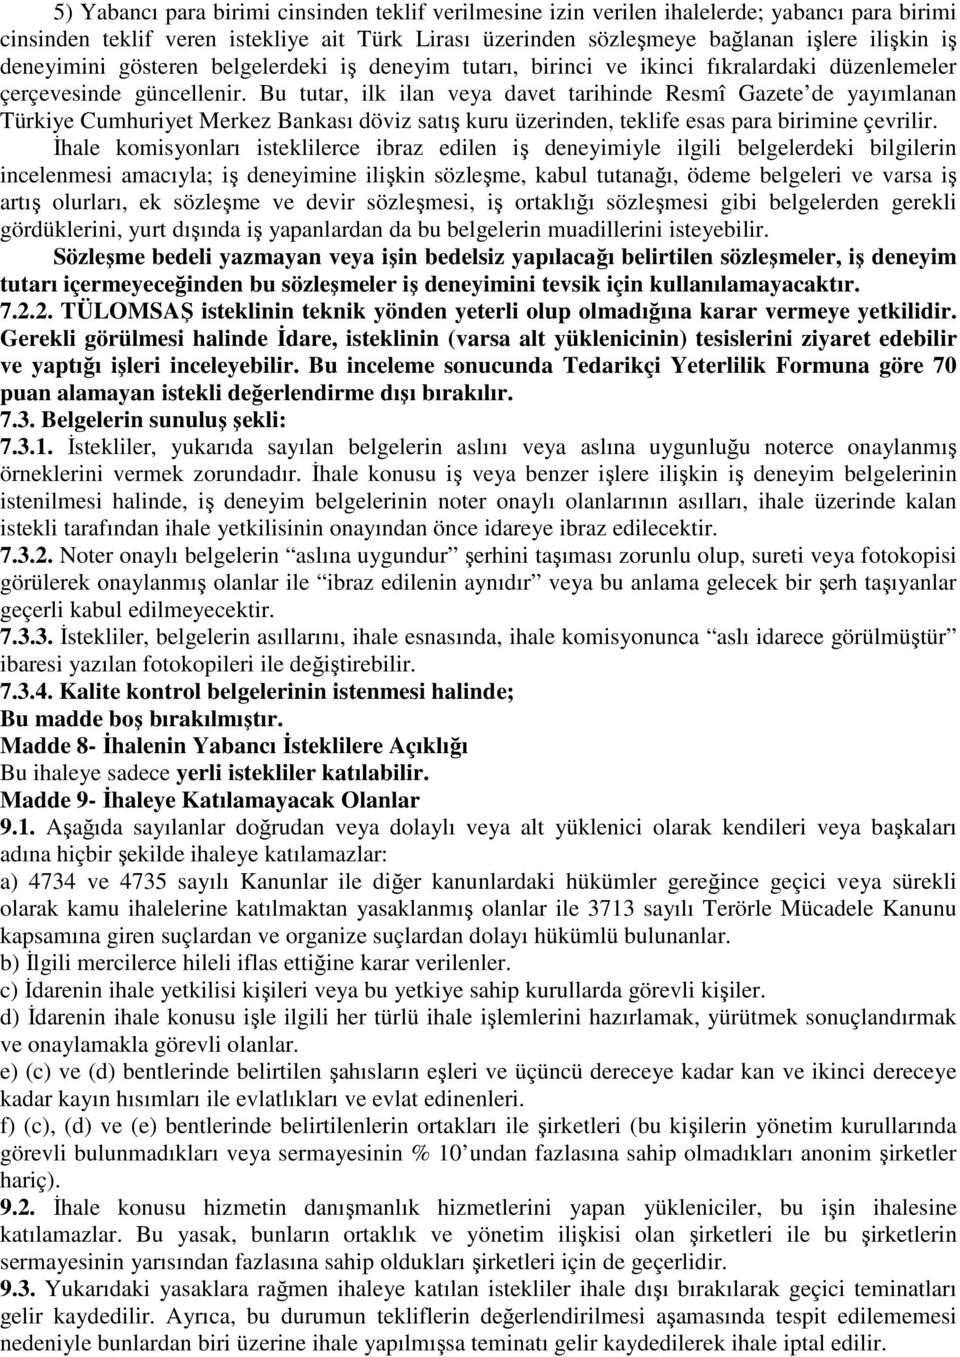 Bu tutar, ilk ilan veya davet tarihinde Resmî Gazete de yayımlanan Türkiye Cumhuriyet Merkez Bankası döviz satış kuru üzerinden, teklife esas para birimine çevrilir.